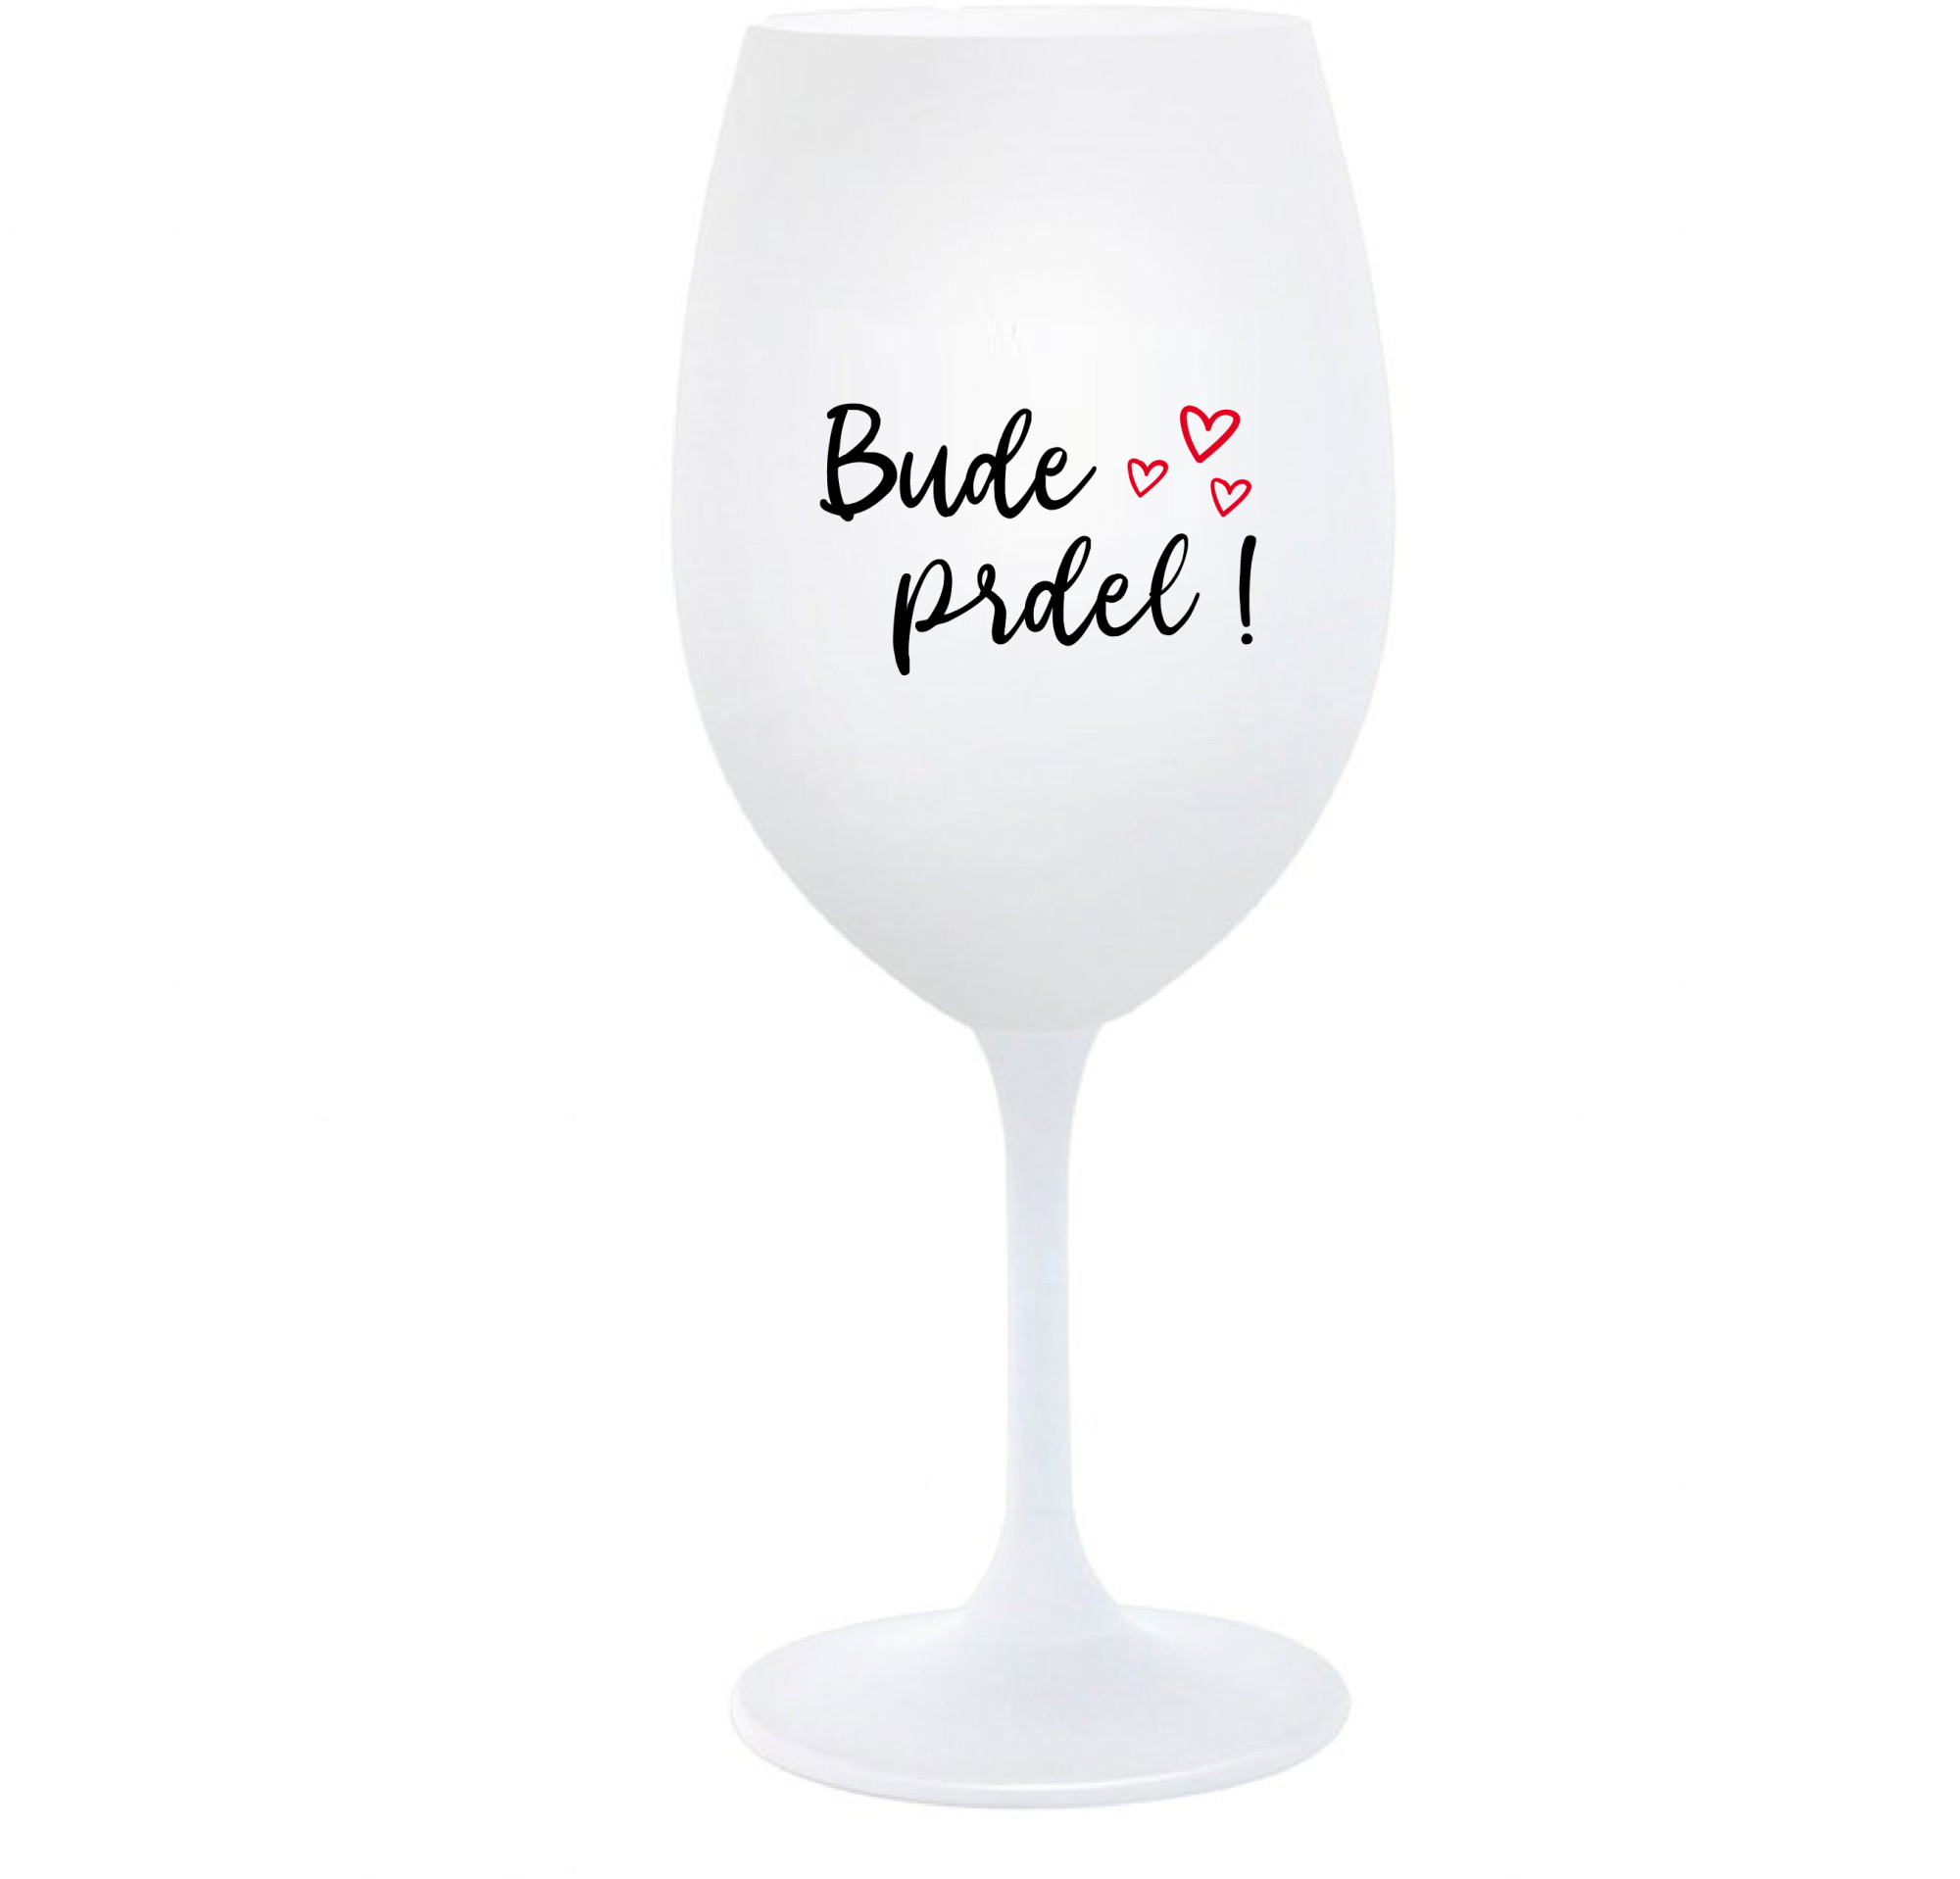 BUDE PRDEL! - bílá sklenice na víno 350 ml